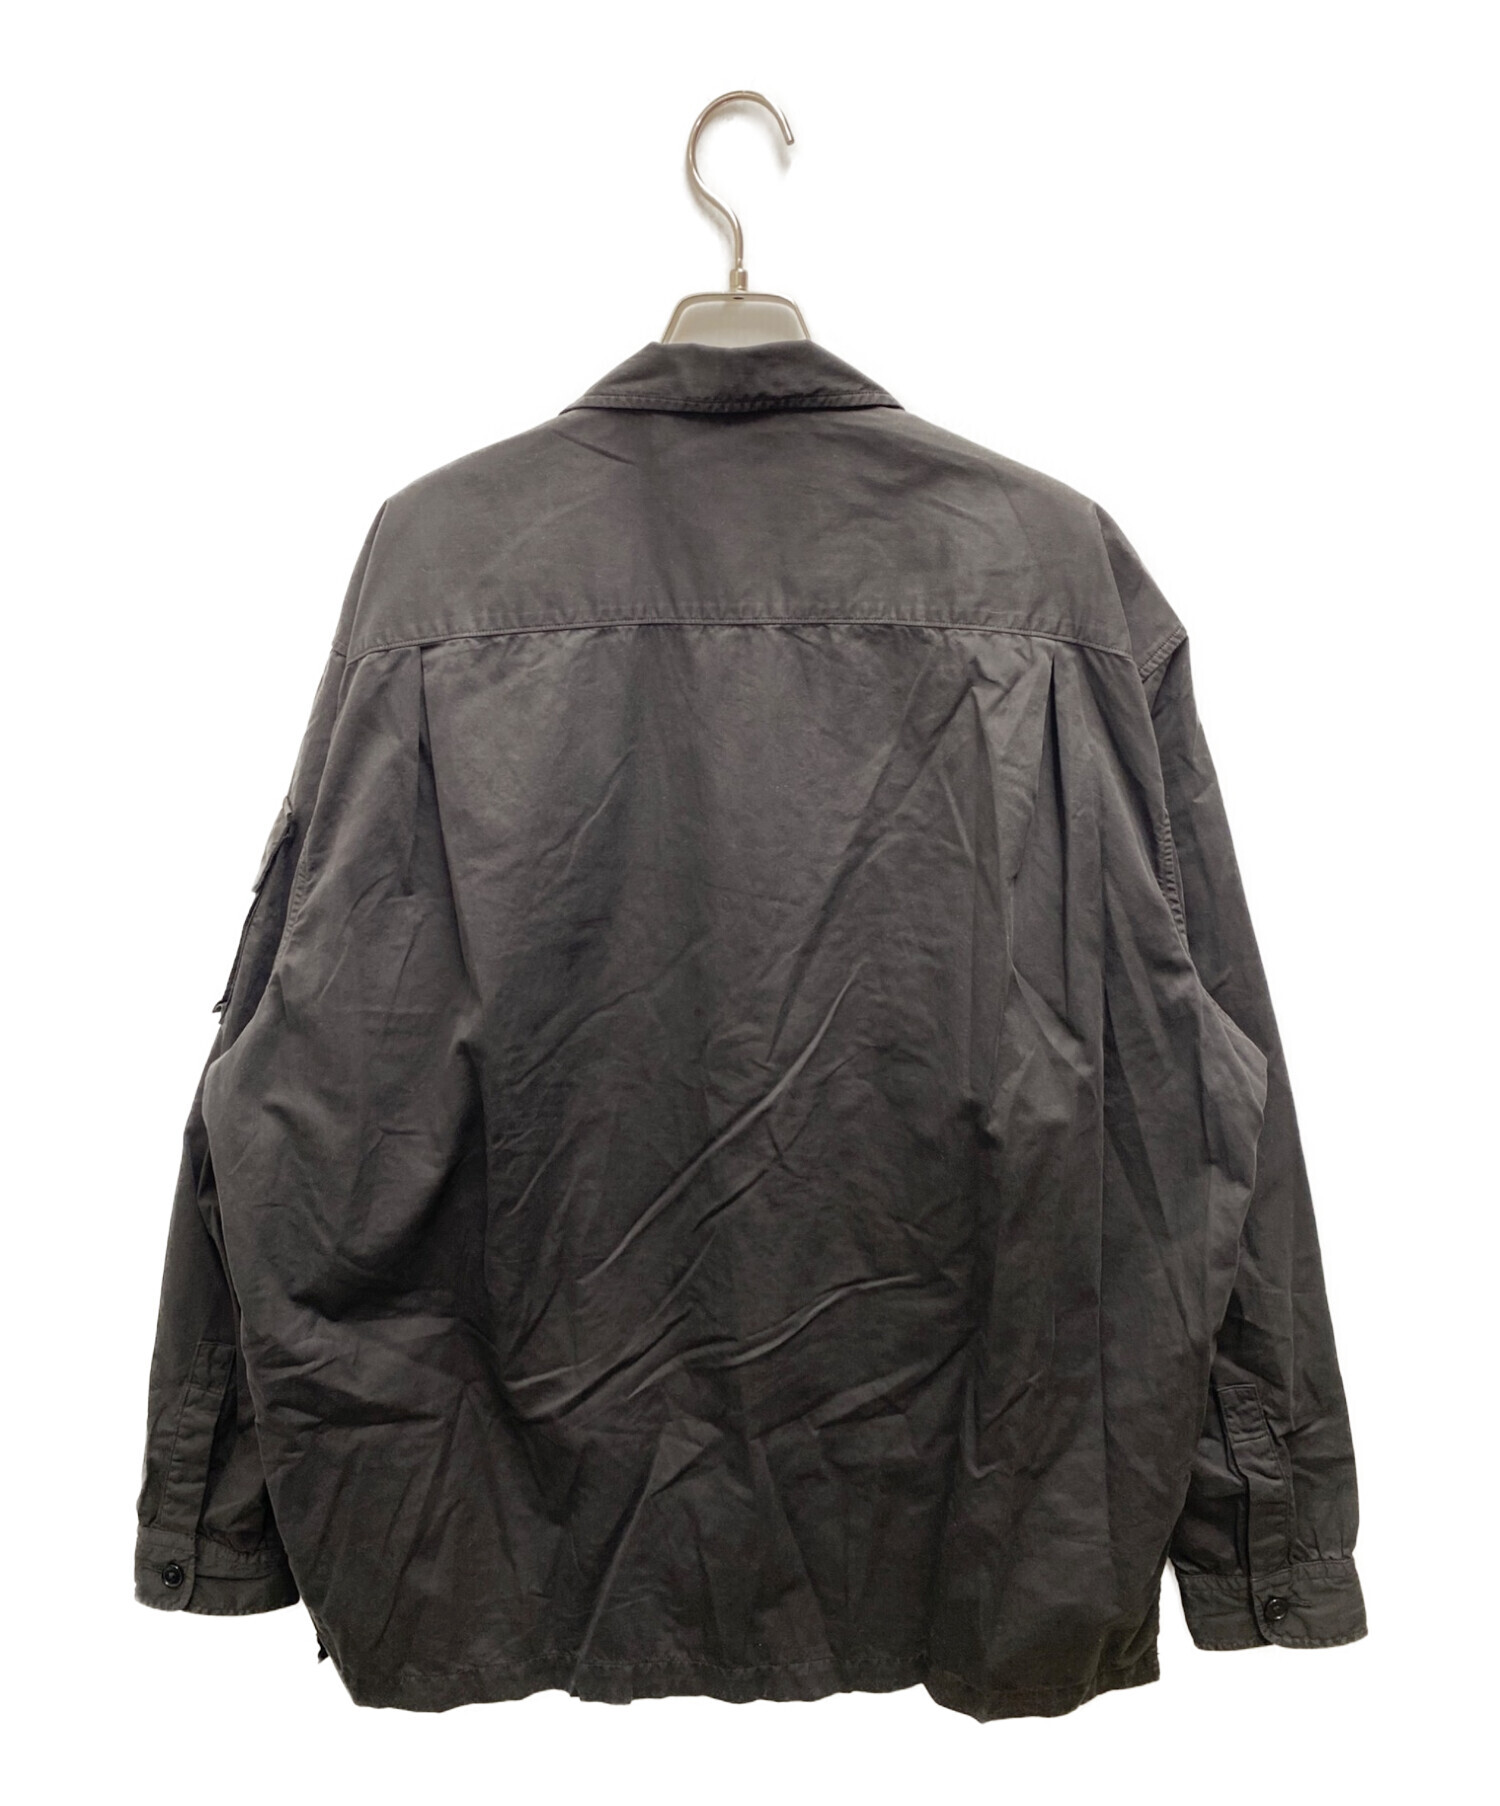 KAPTAIN SUNSHINE (キャプテンサンシャイン) Garment Dyed Safari Shirt Jacket ブラック サイズ:42